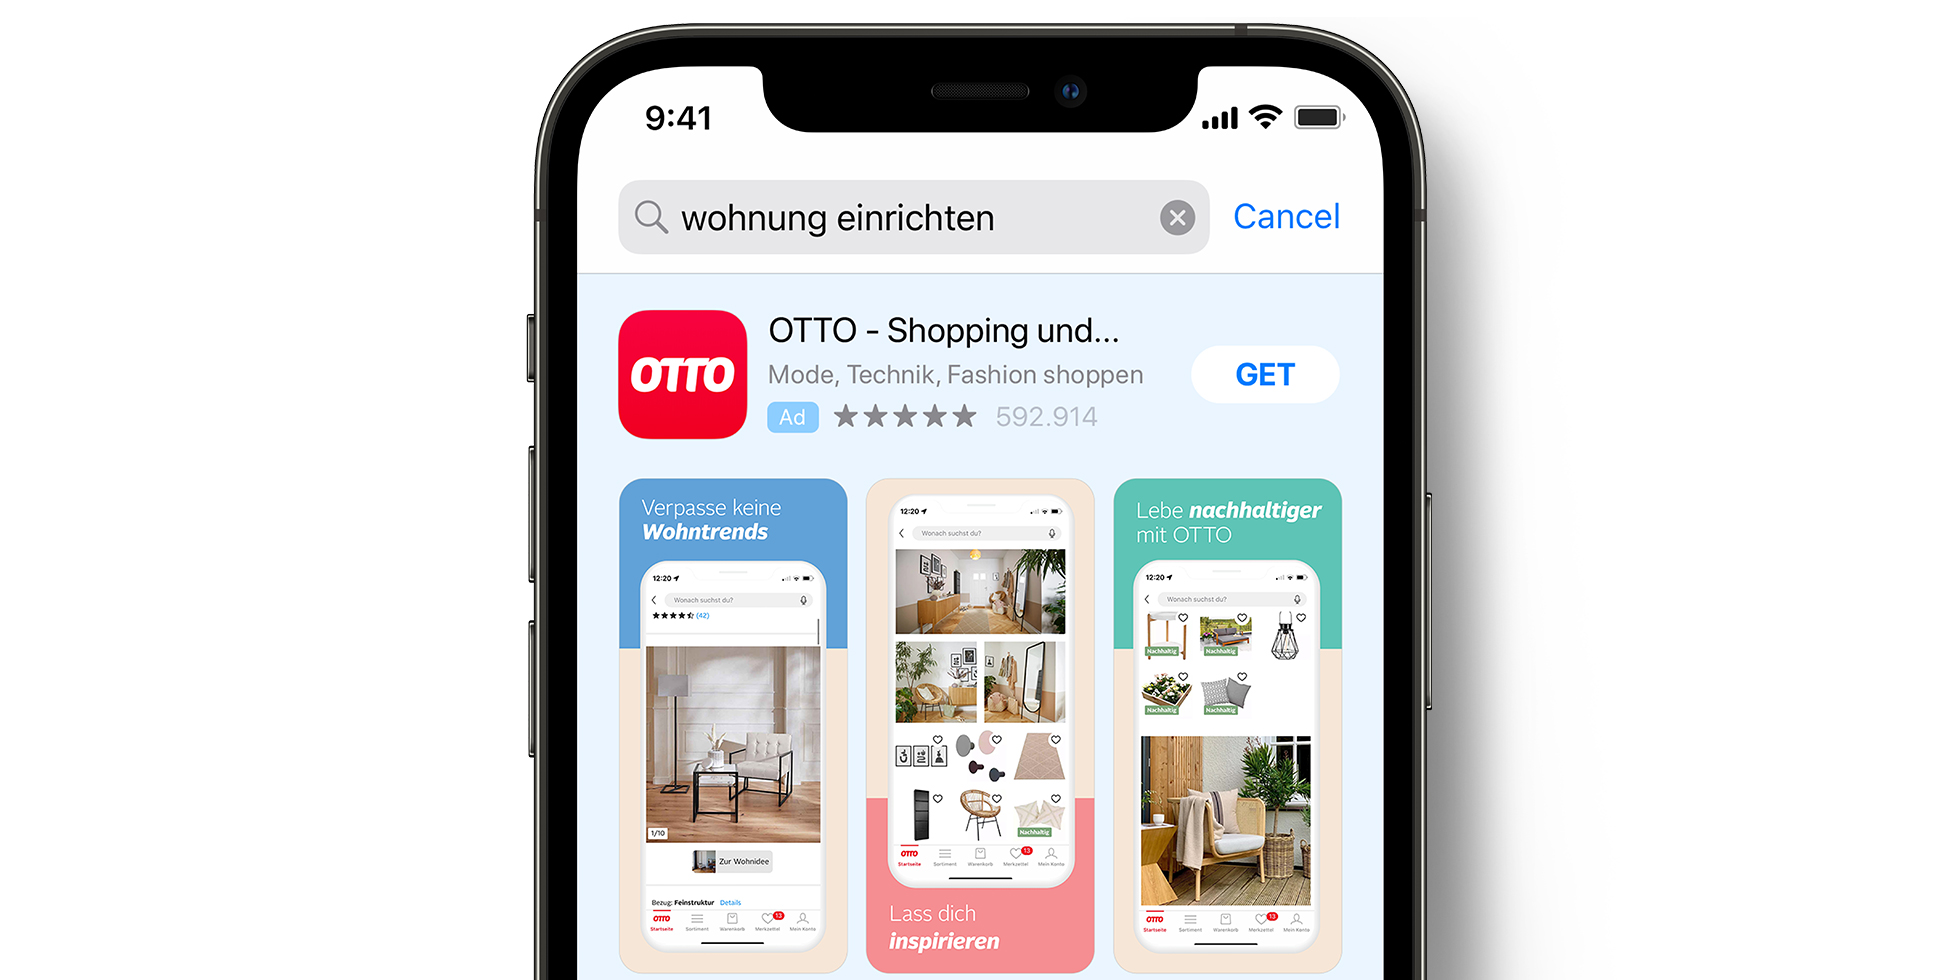 OTTO-Anzeige im App Store